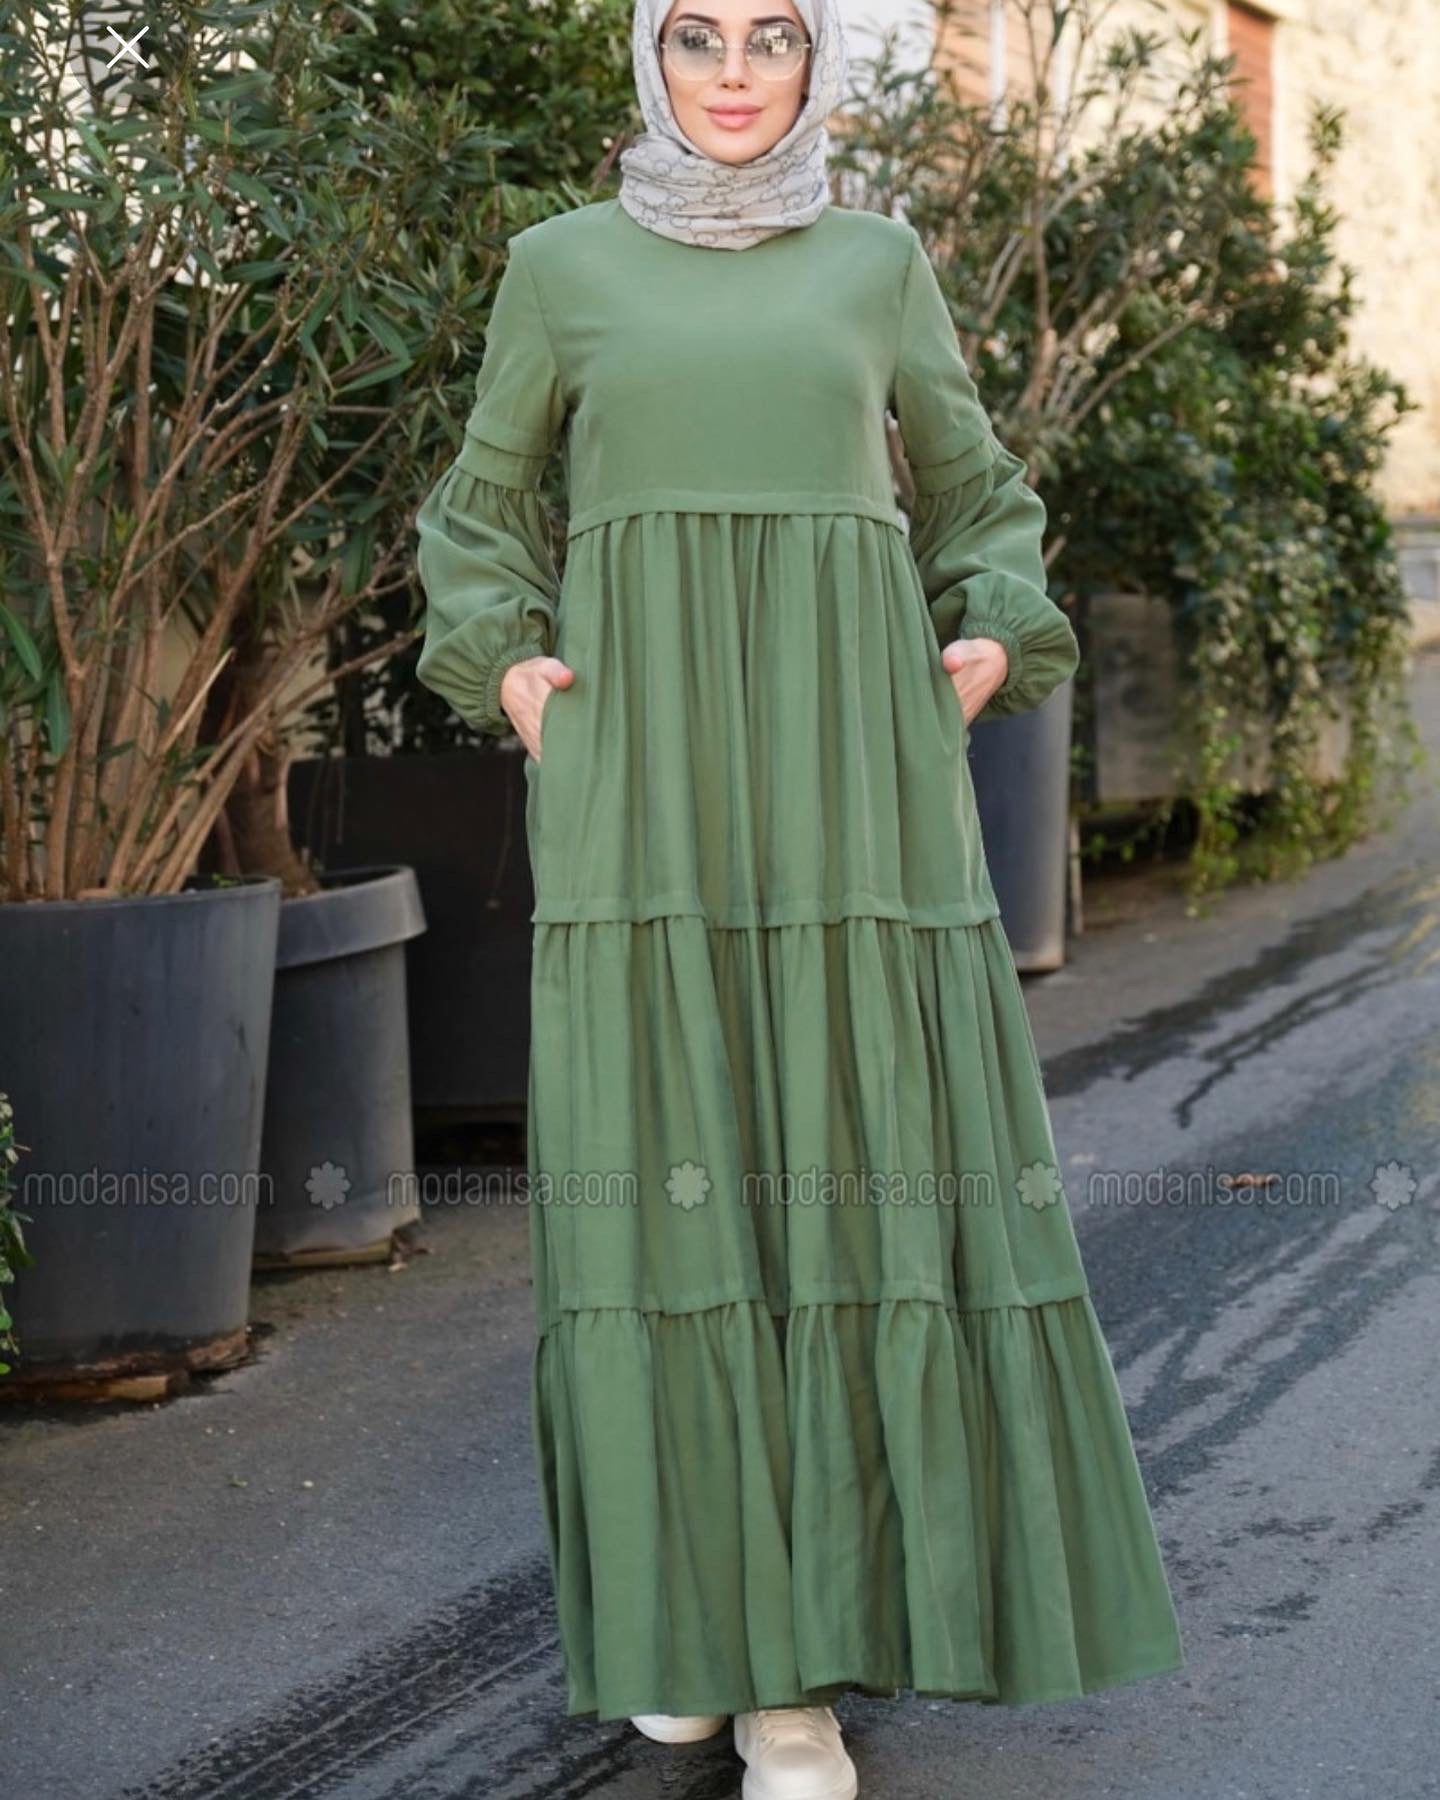 Tiered modest dress